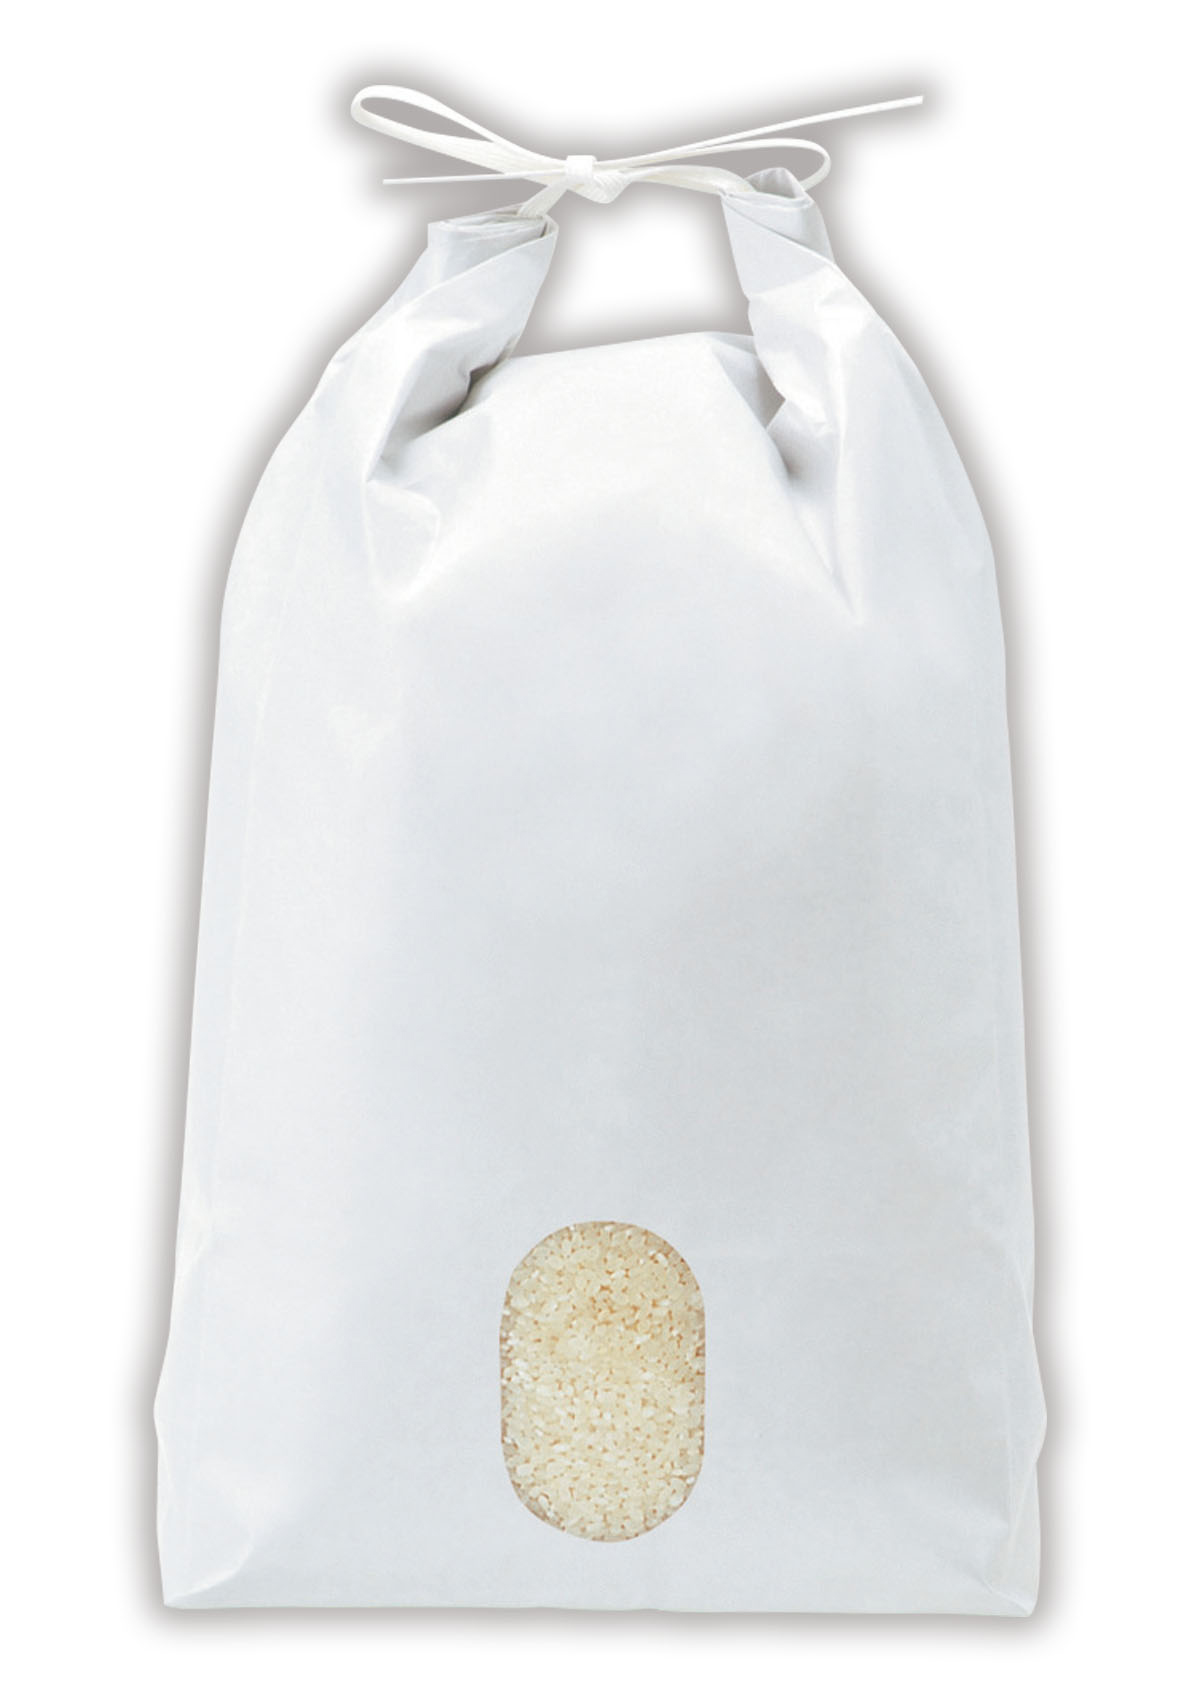 米袋 2kg用 ミルキークイーン 1ケース(300枚入) KHP-501 白保湿タイプ ミルキークイーン フラワー - 4